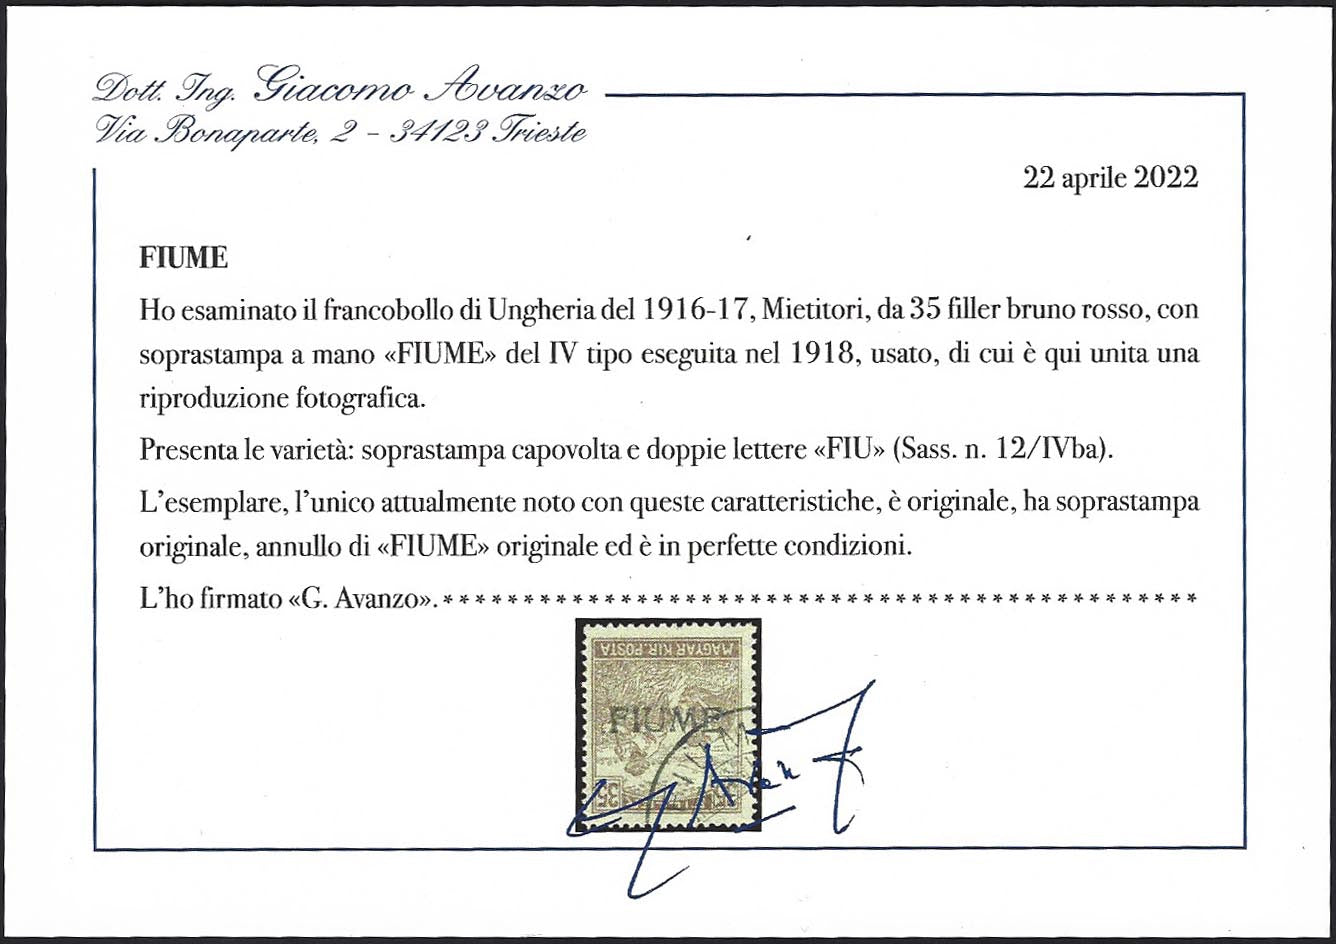 Francobollo d'Ungheria della serie Mietitori, 35 filler bruno rosso con soprastampa FIUME a mano capovolta IV tipo e doppie lettere FIU (12/IVba) usato